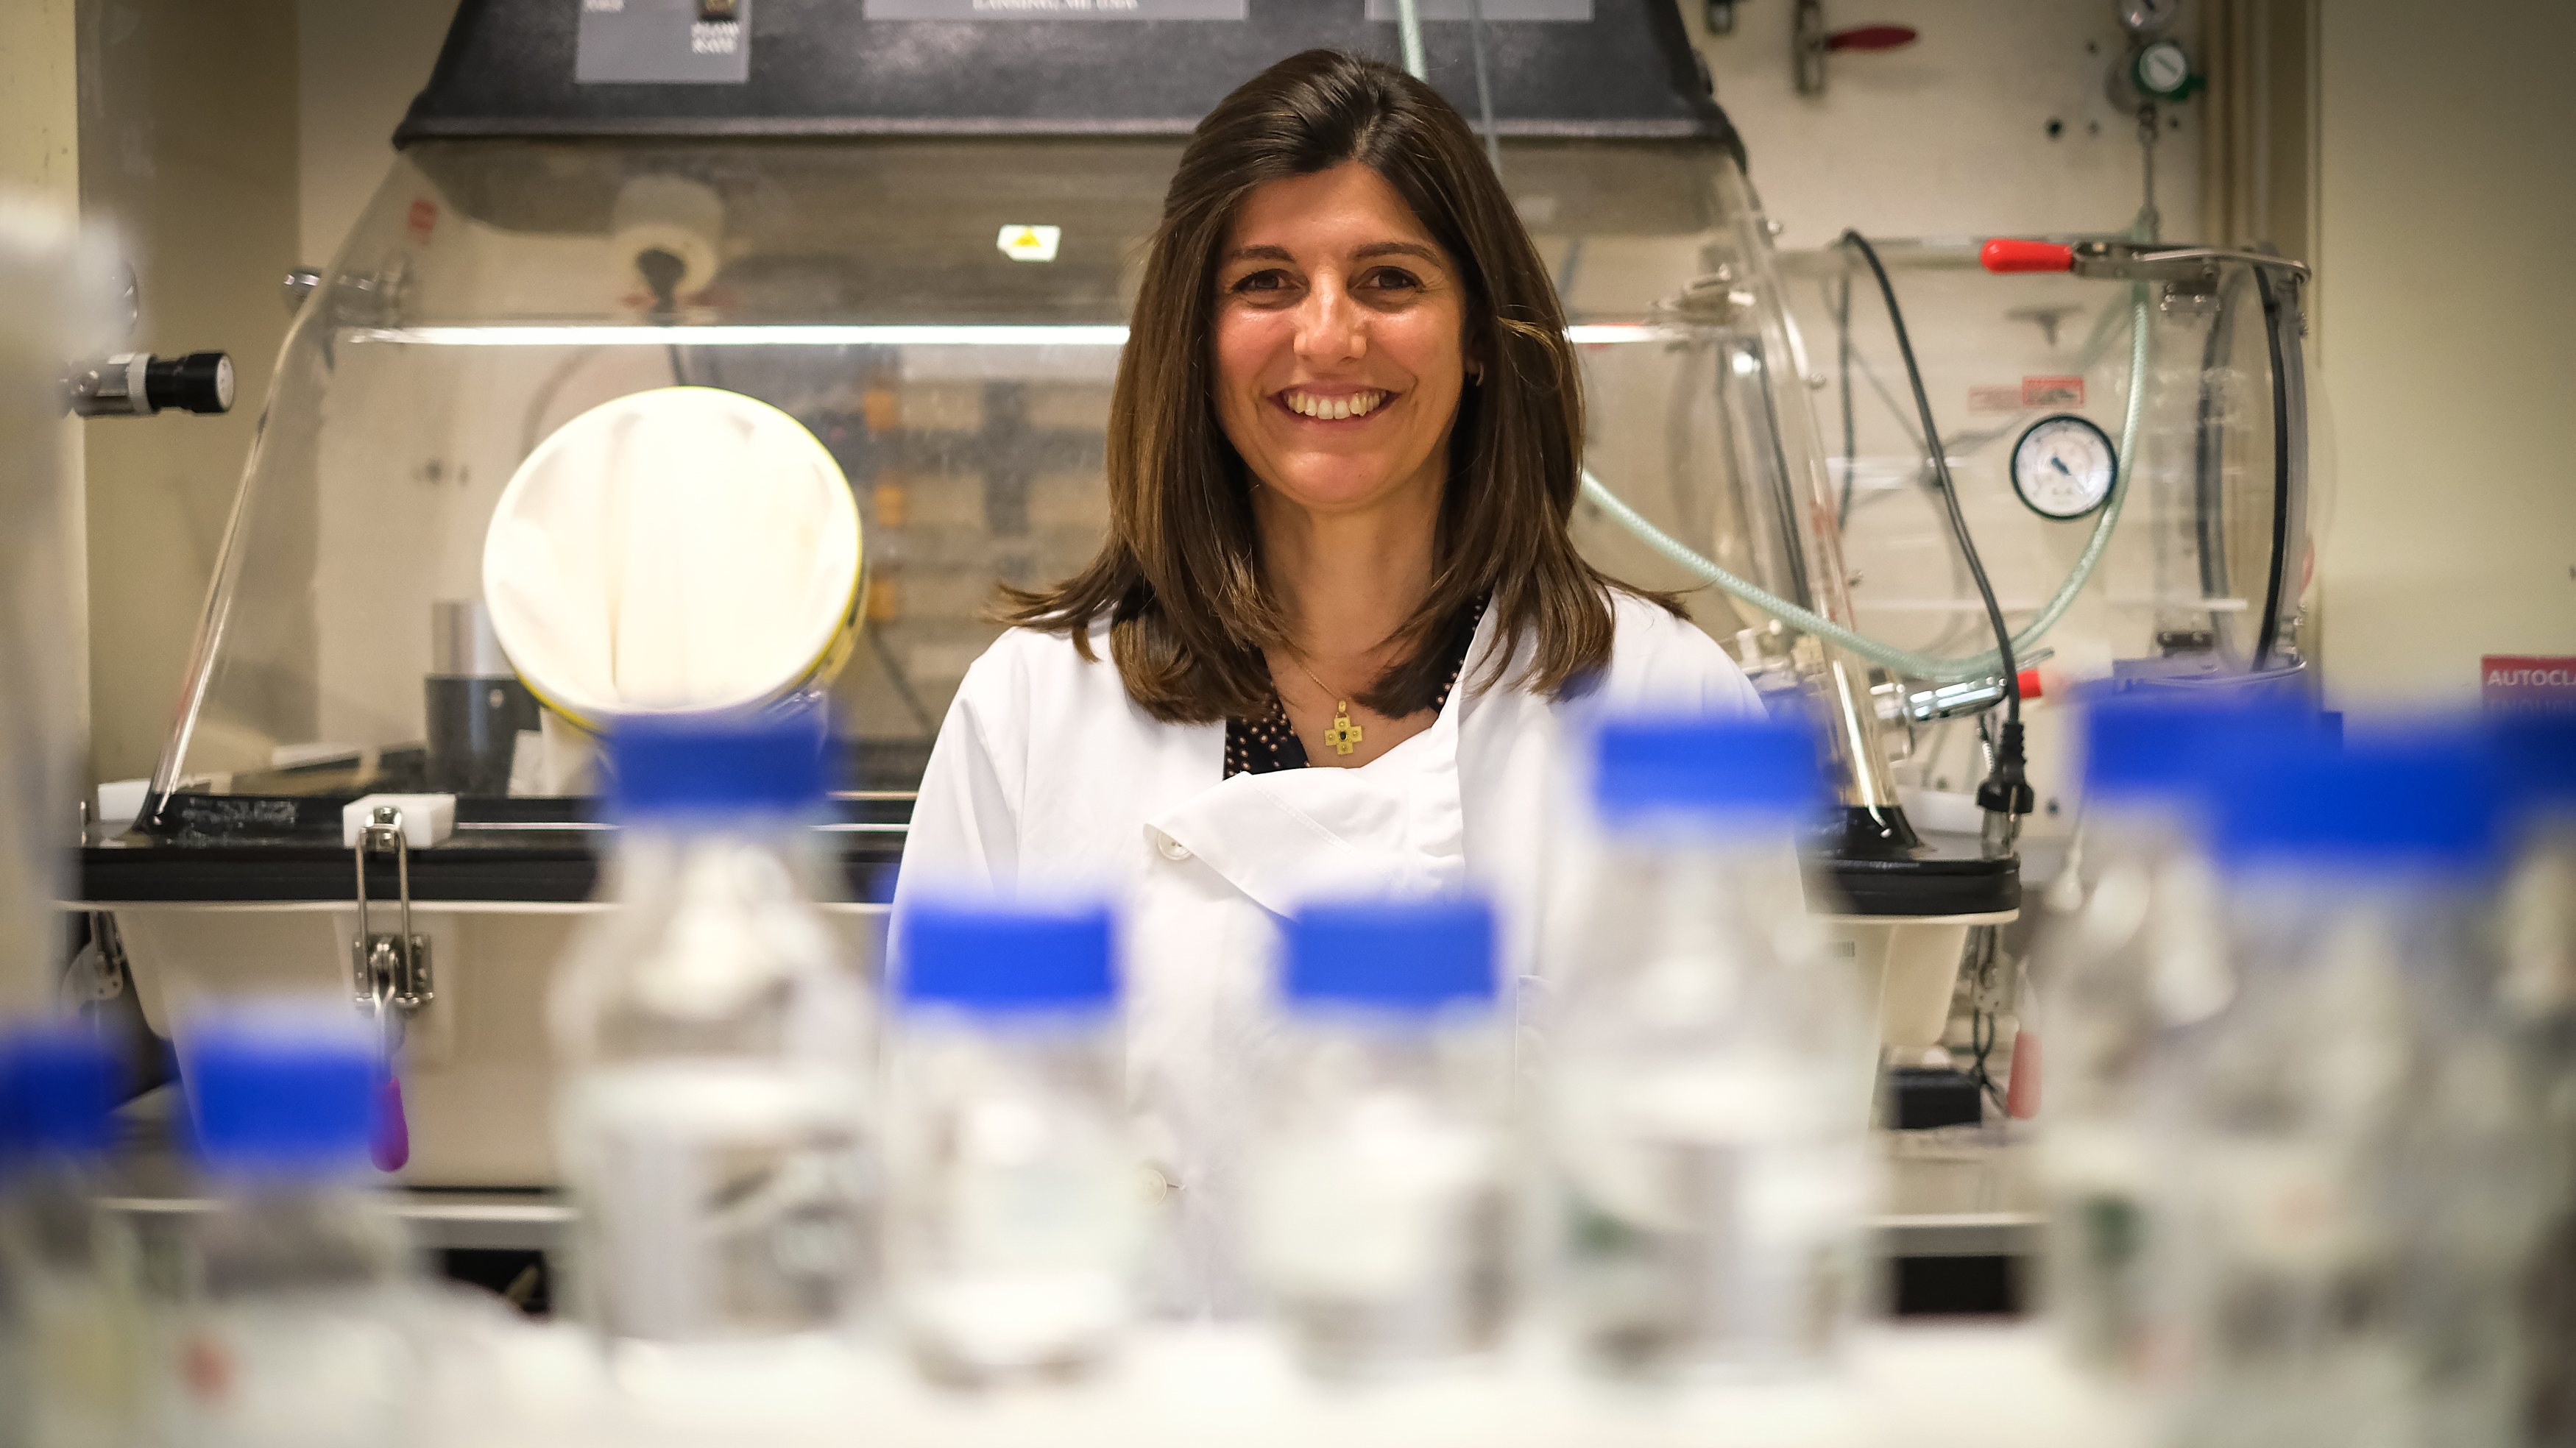 Doutorada em Engenharia Química e Biológica, Joana Azeredo é investigadora do Centro de Engenharia Biológica da Universidade do Minho, onde coordena o grupo de investigação em Ciência e Engenharia de Biofilmes